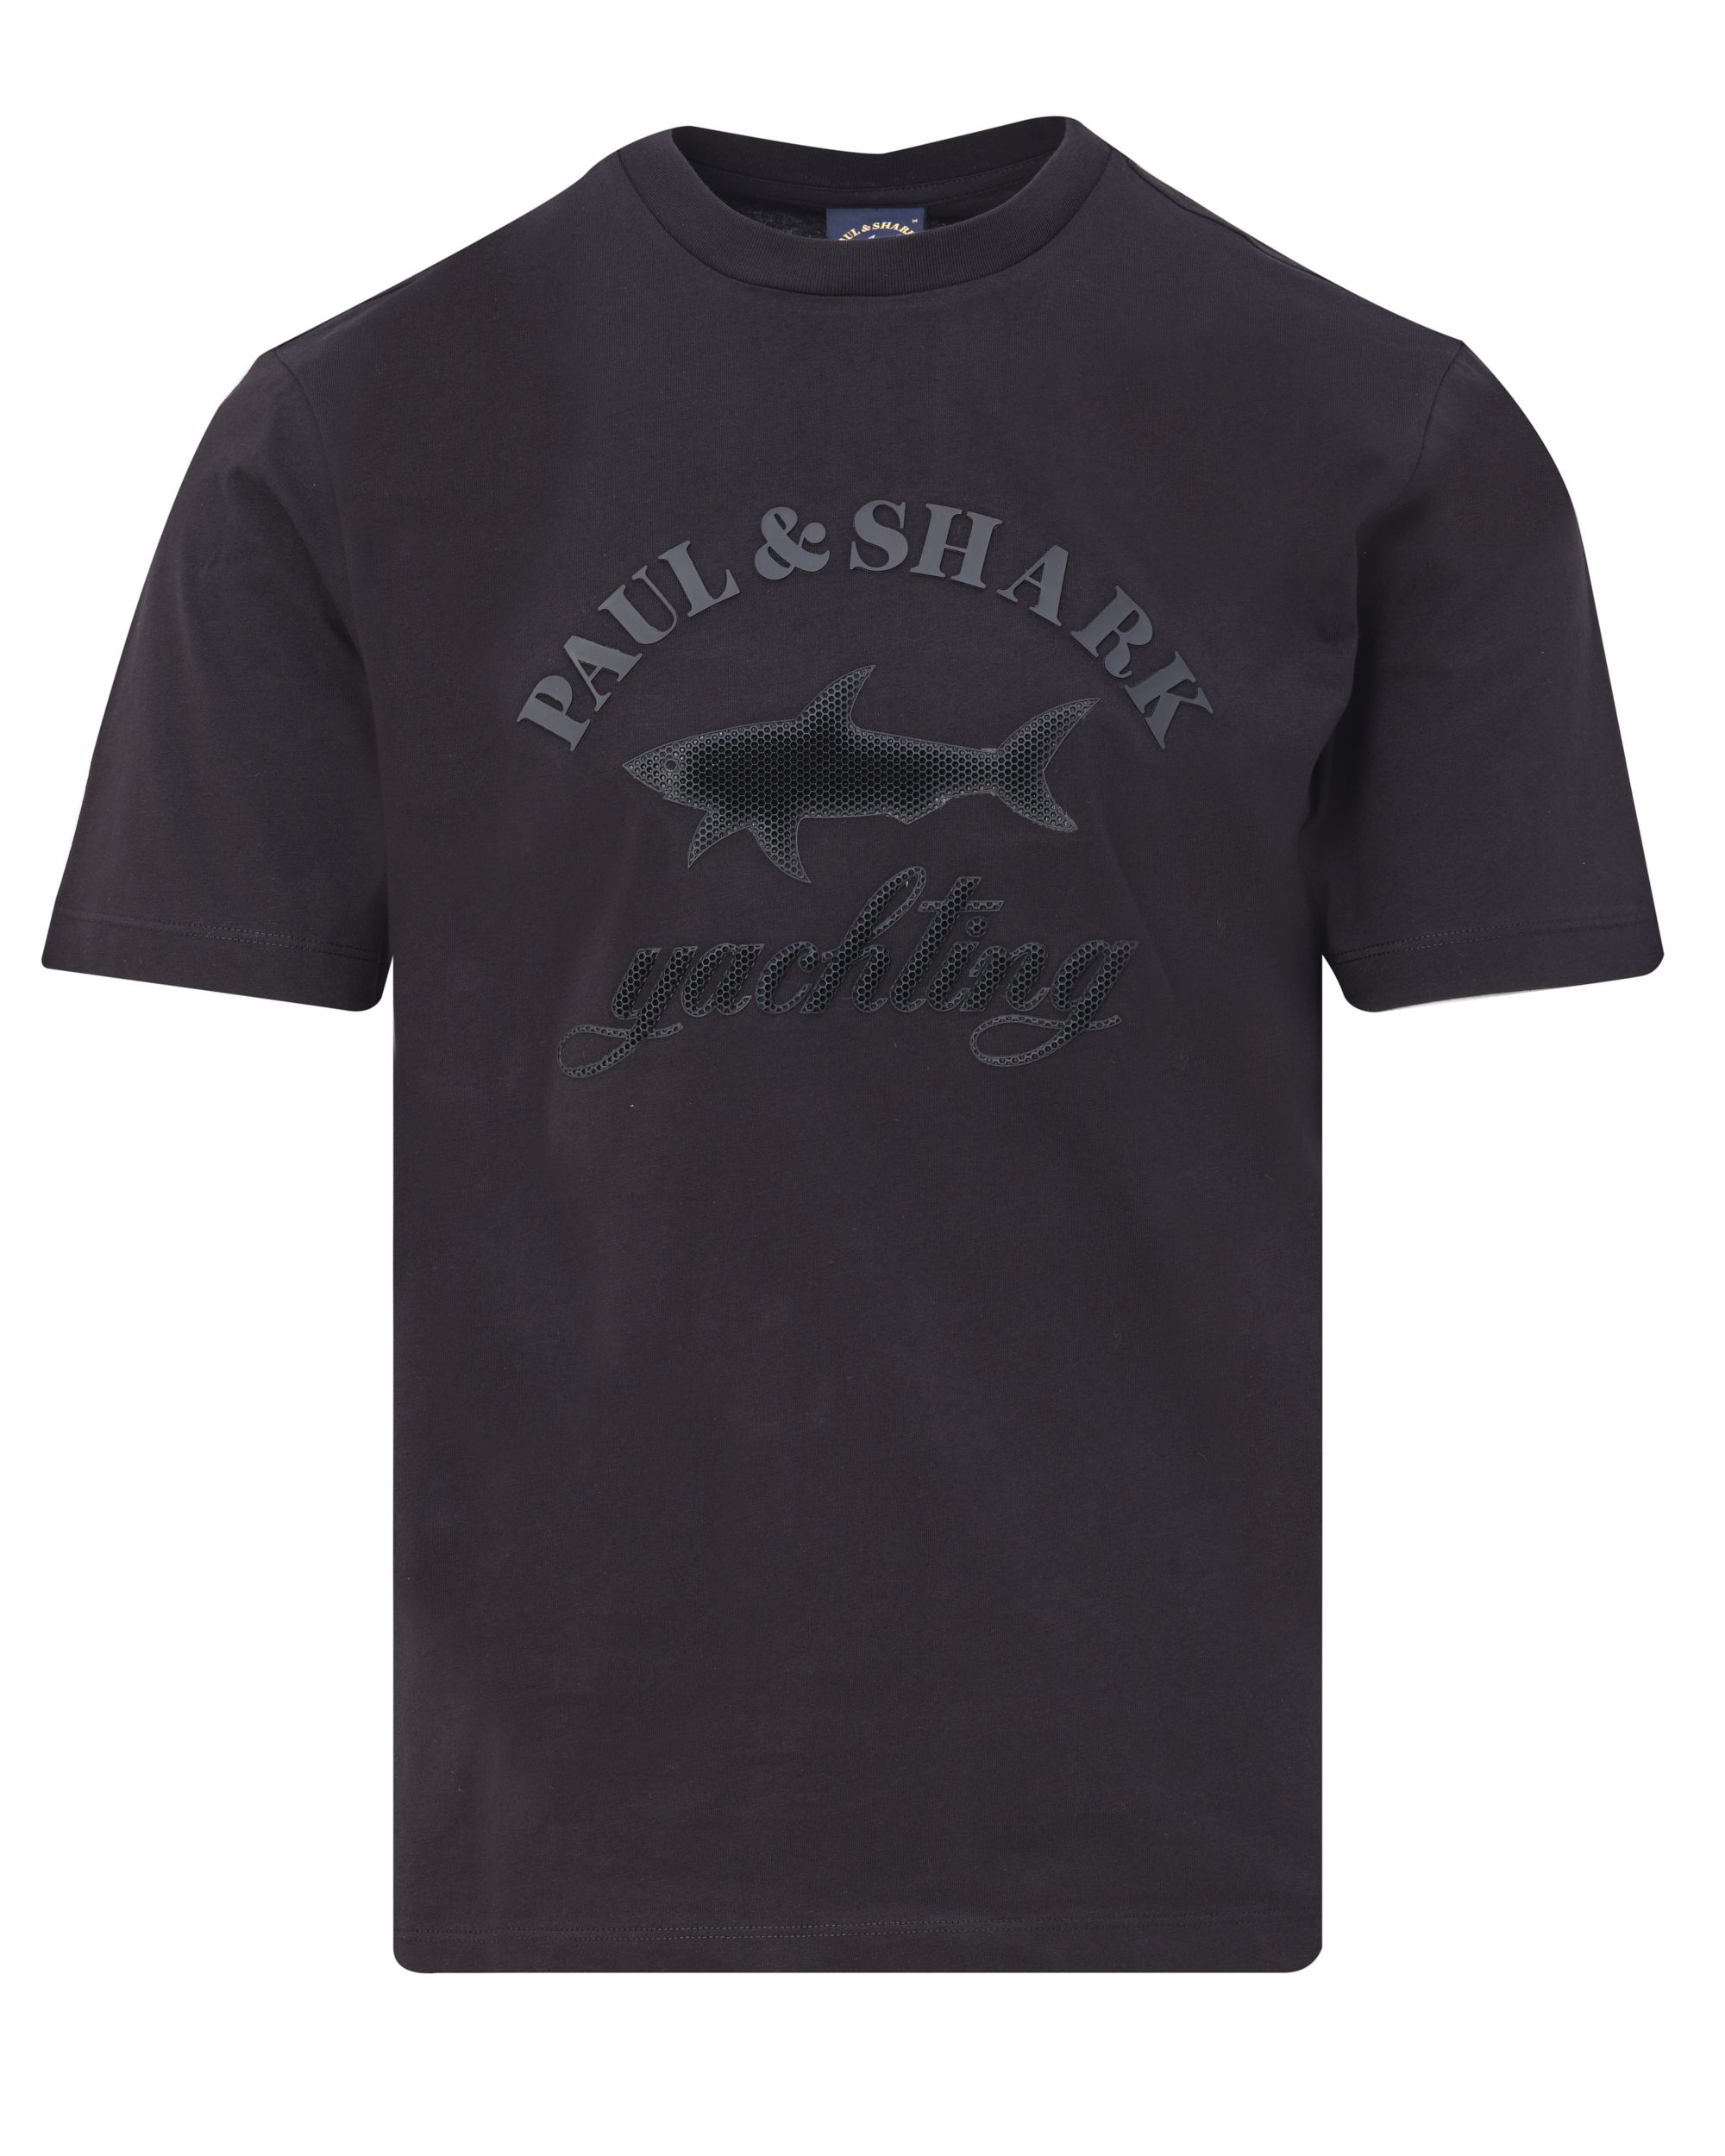 Paul & Shark T-shirt KM Zwart 083354-001-L